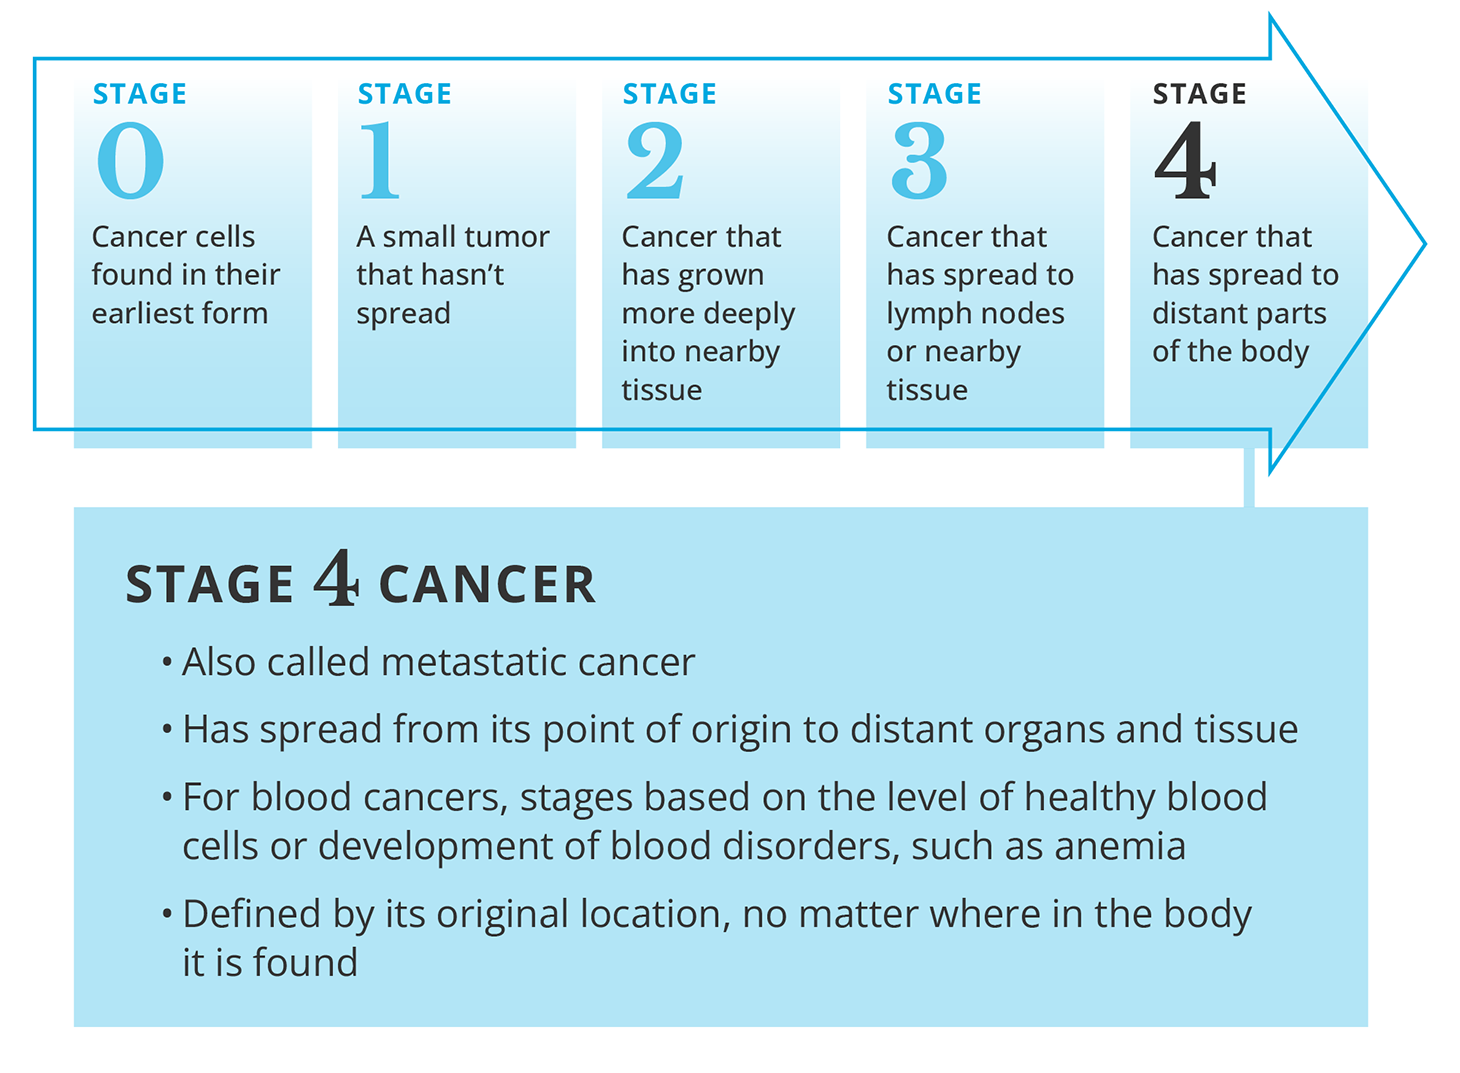 Description of stage 4 (metastatic) cancer